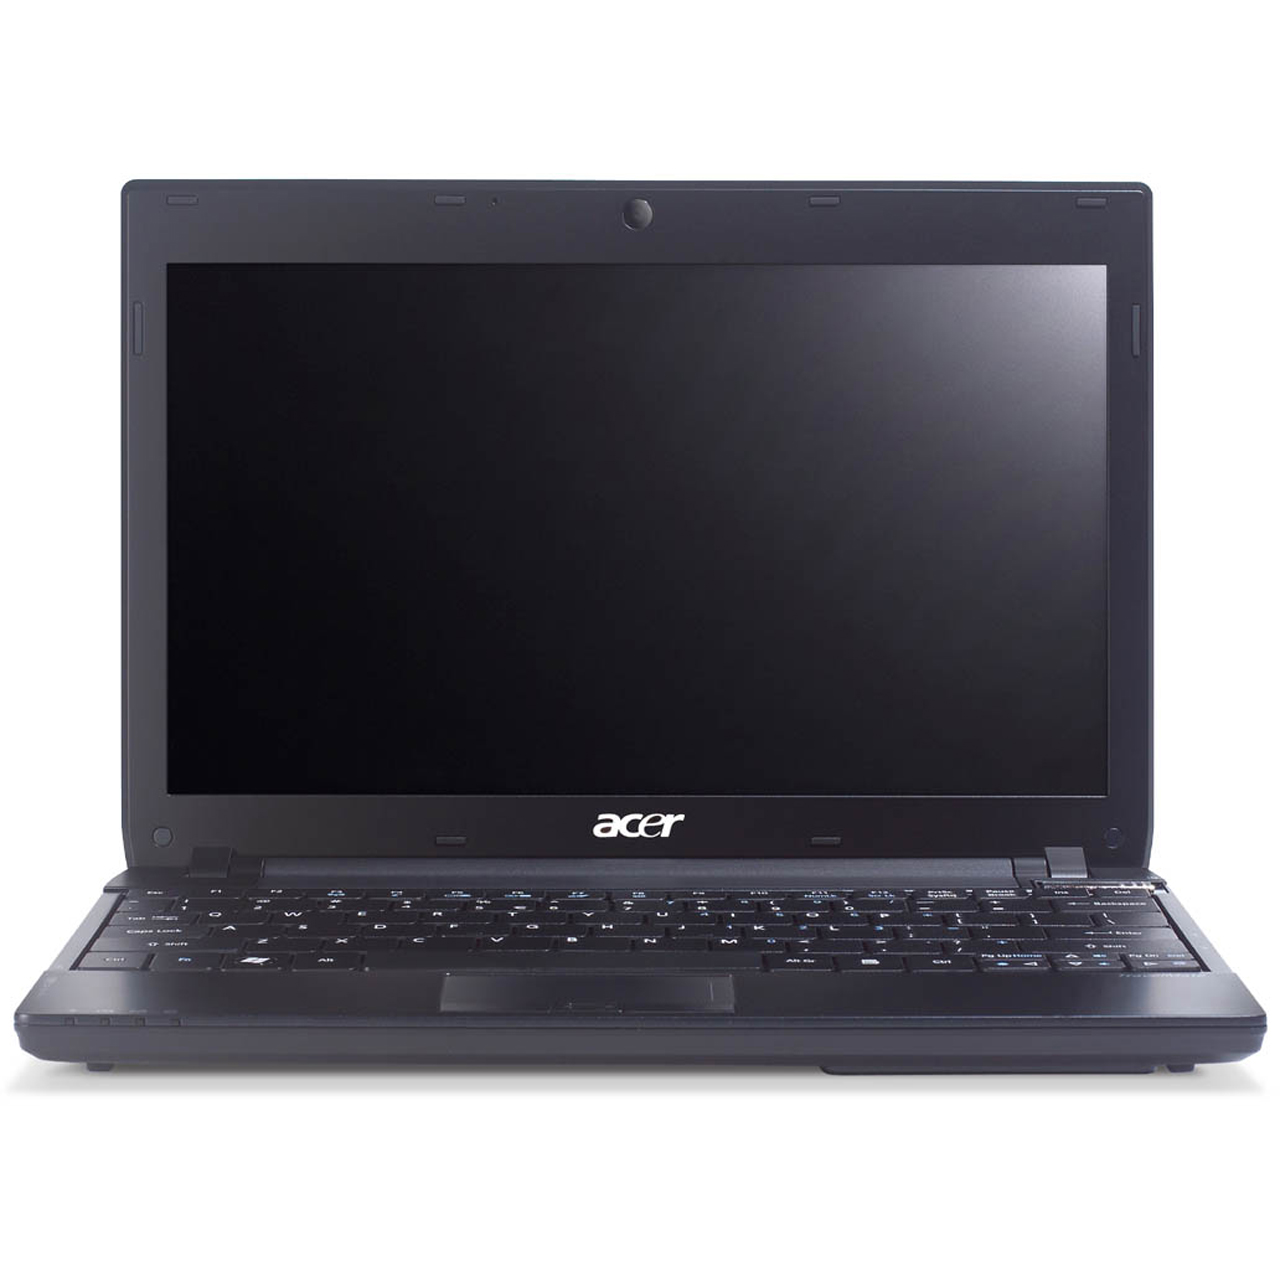 Acer Timeline 8172T Notebook